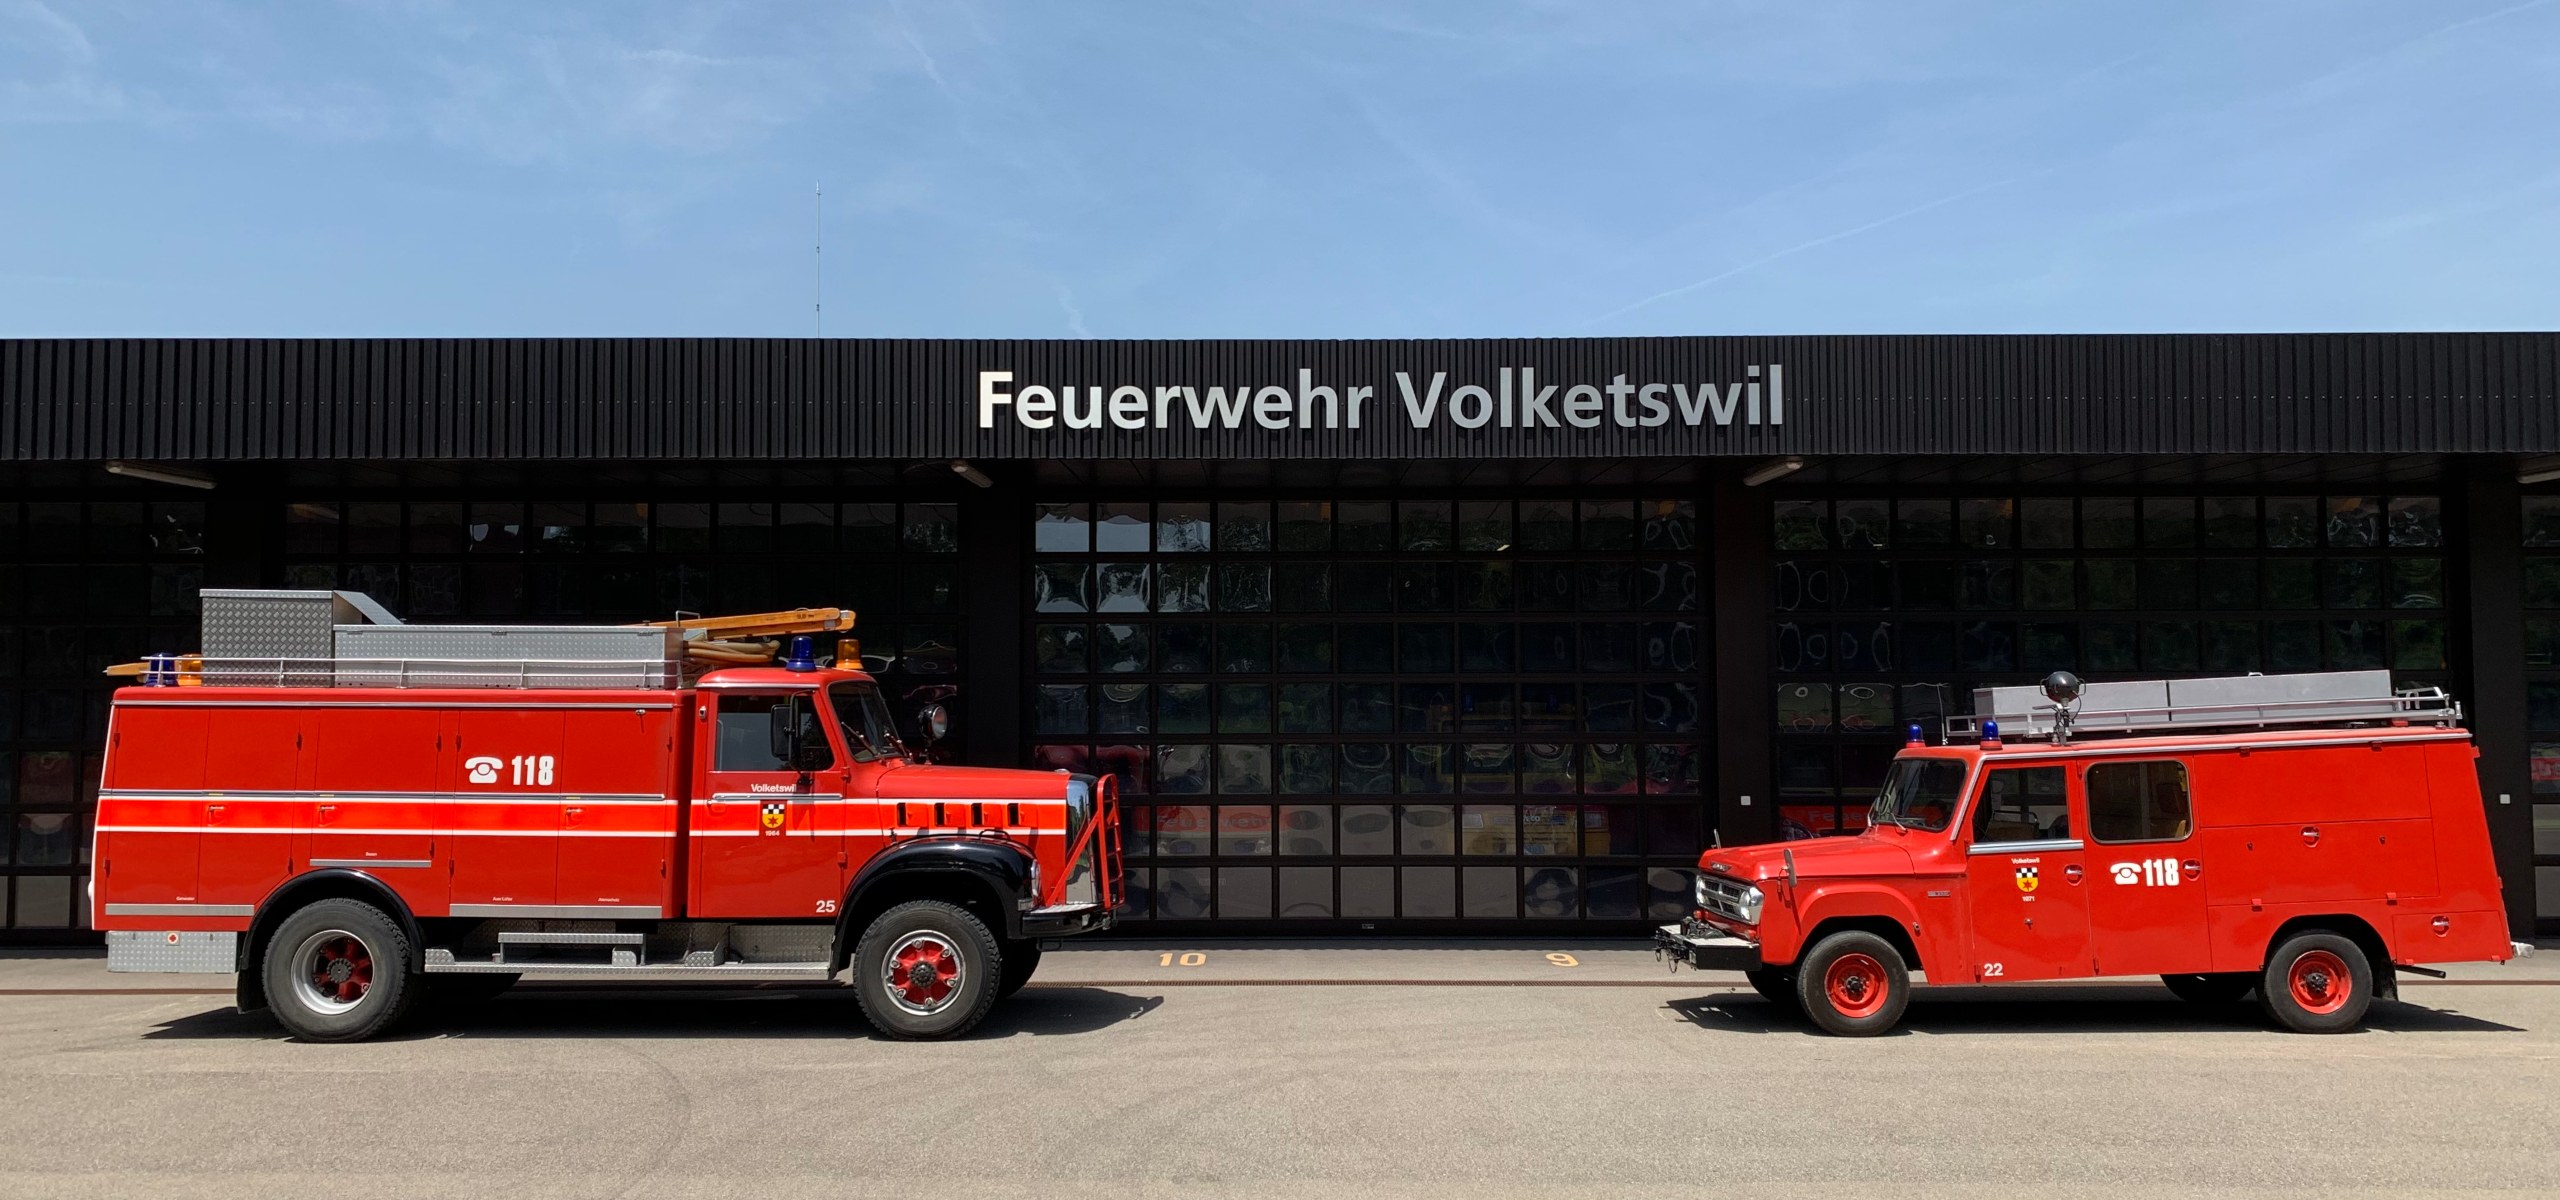 (c) Feuerwehroldies-volketswil.ch